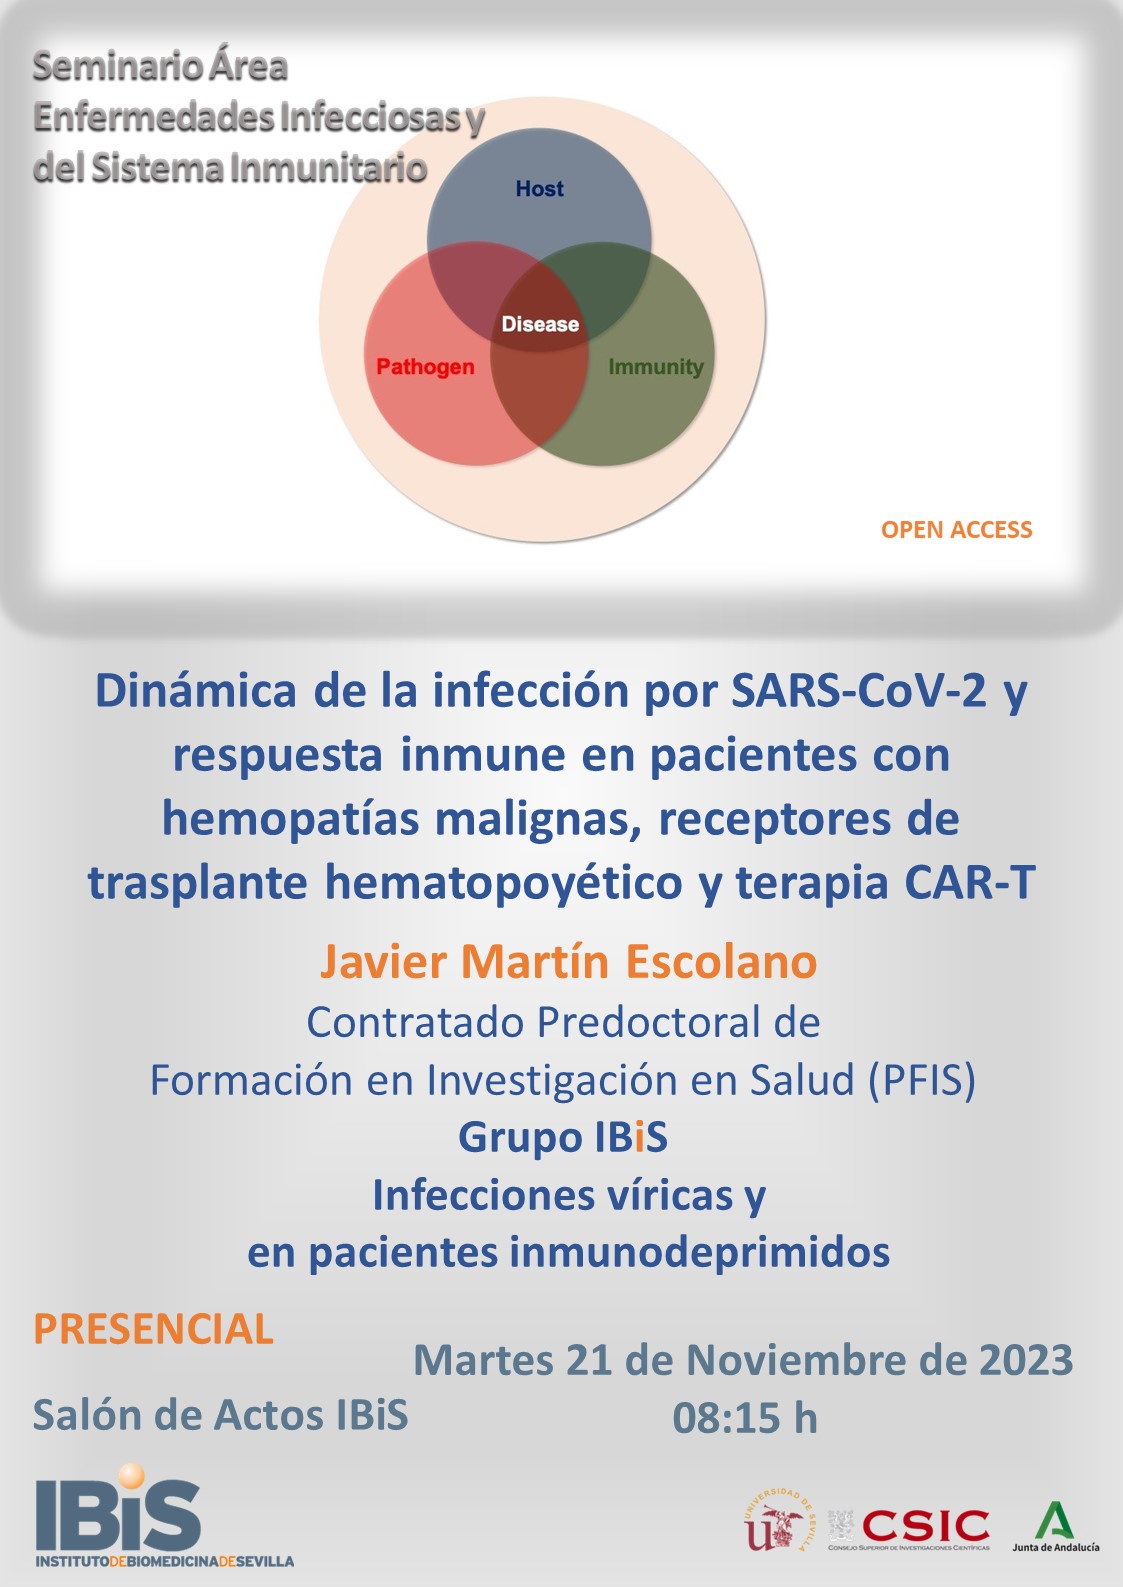 Poster: Dinámica de la infección por SARS-CoV-2 y respuesta inmune en pacientes con hemopatías malignas, receptores de trasplante hematopoyético y terapia CAR-T